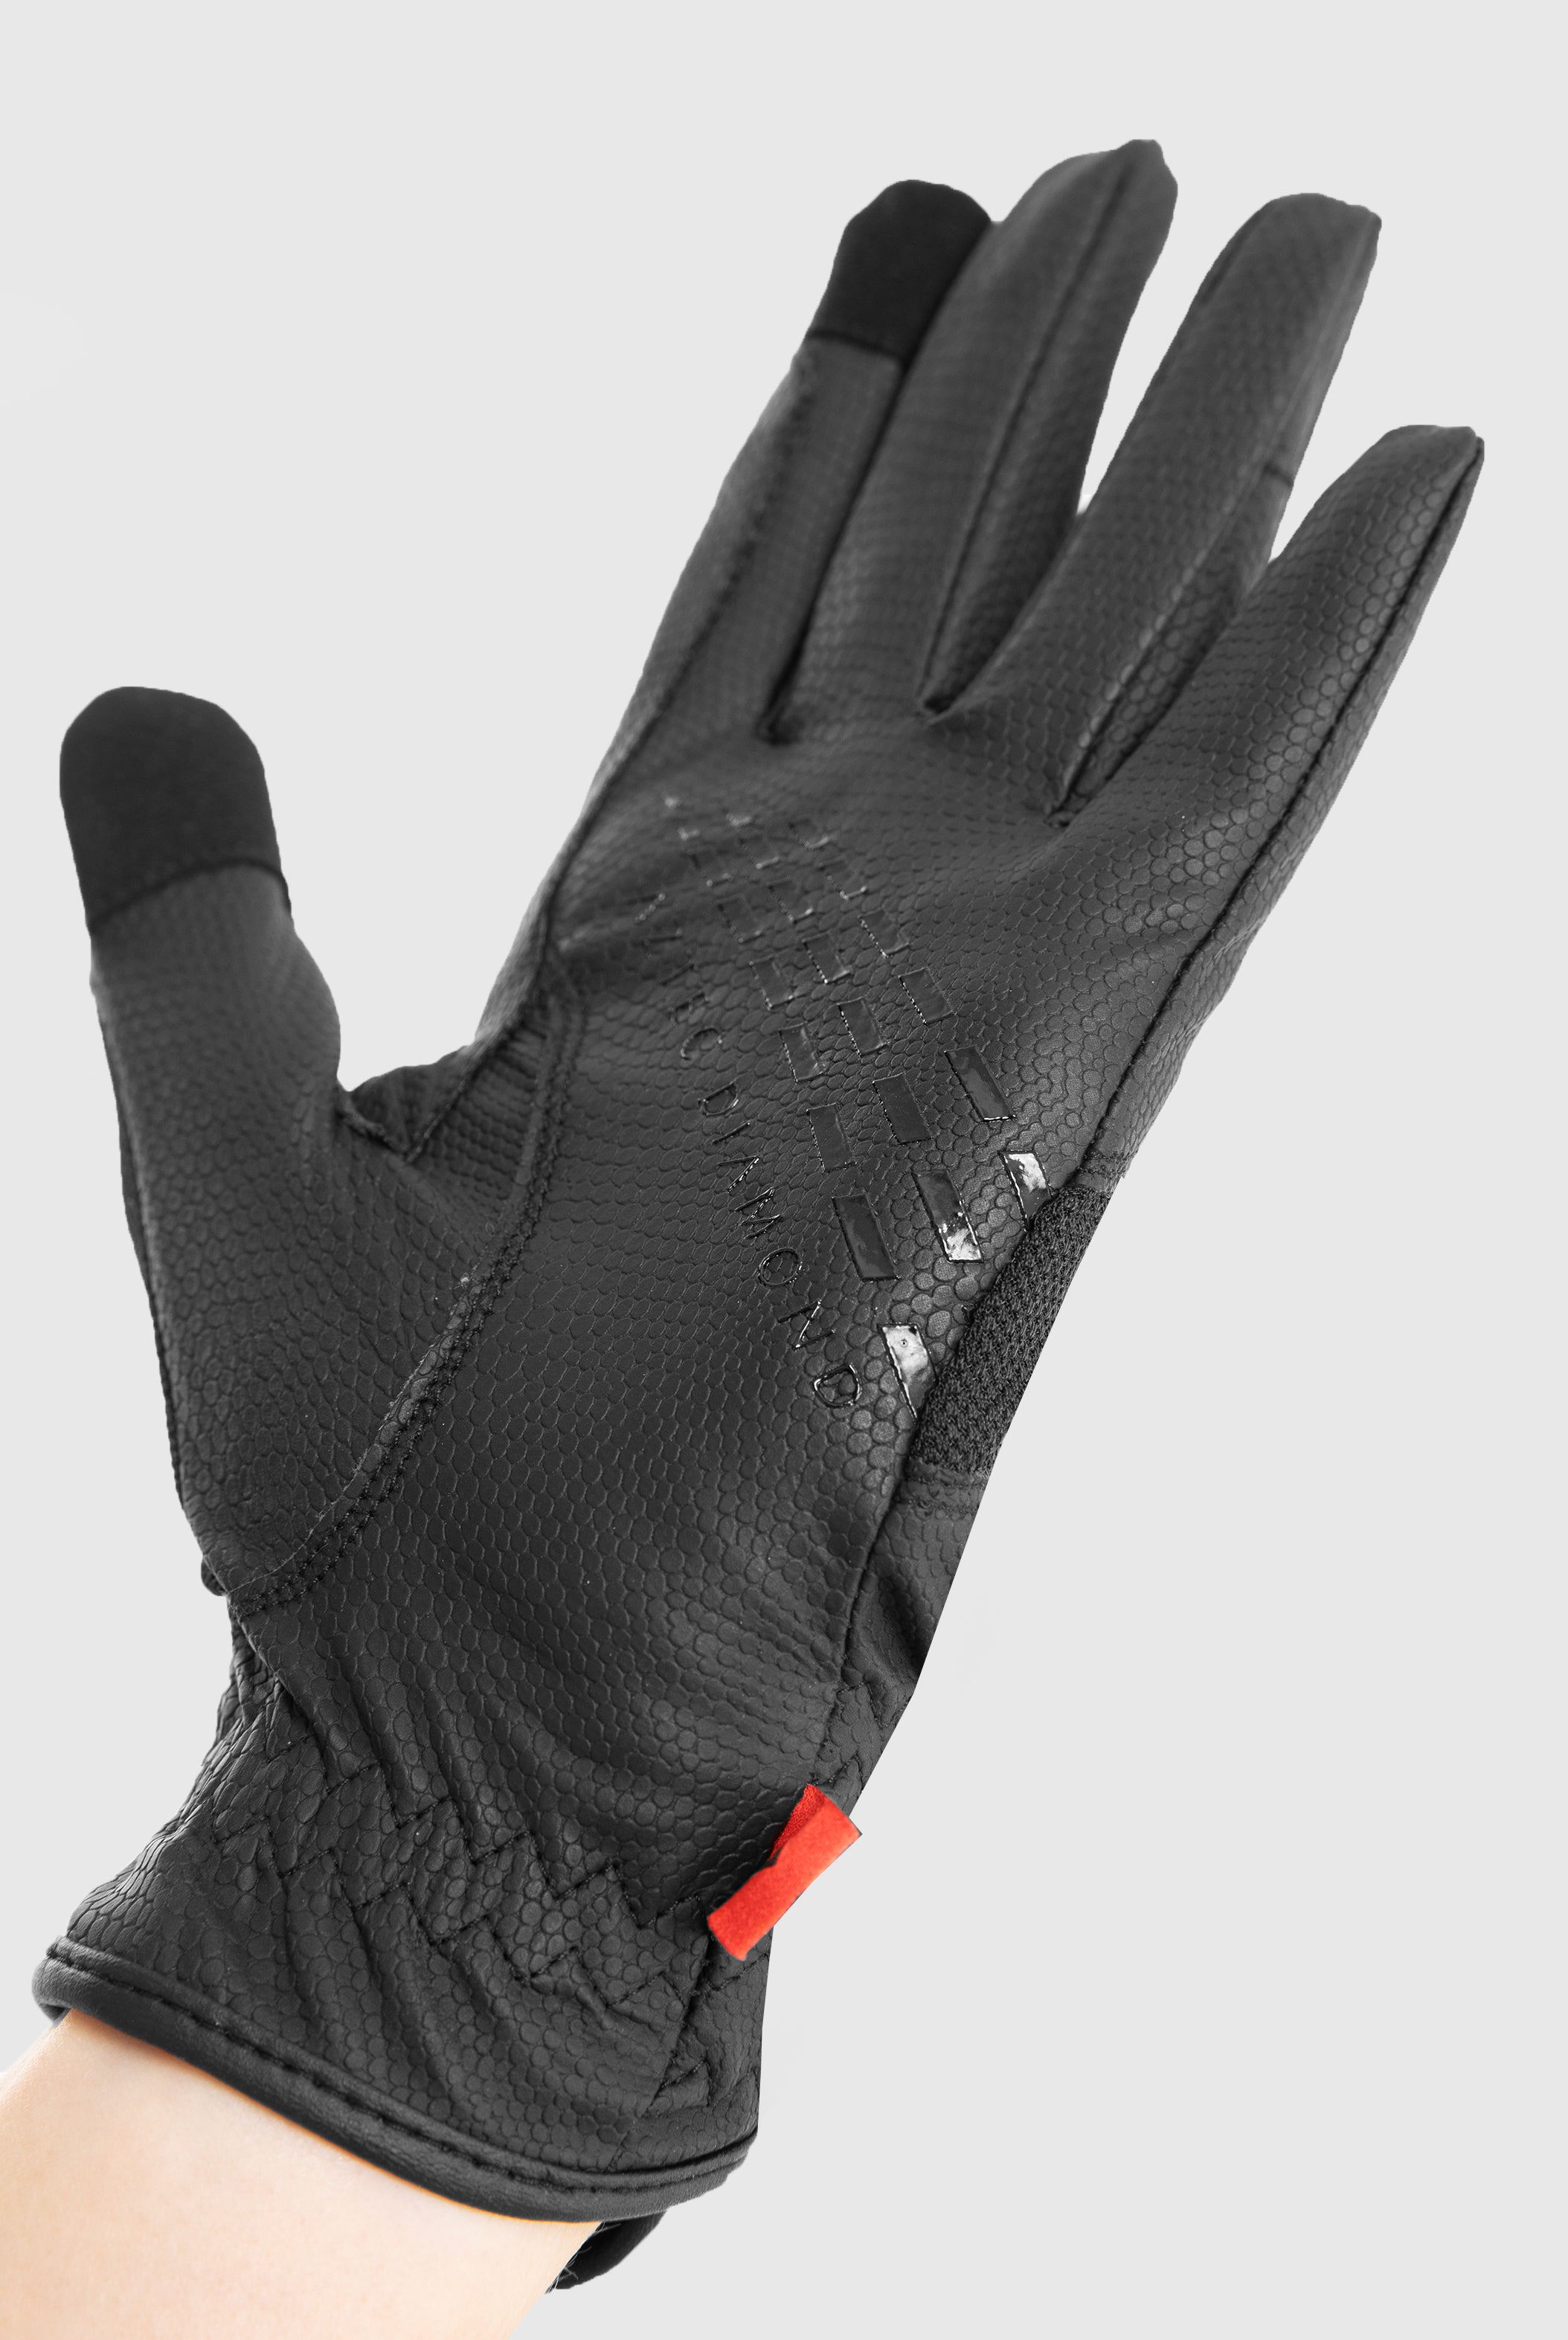 Black Pro Grip Riding Glove